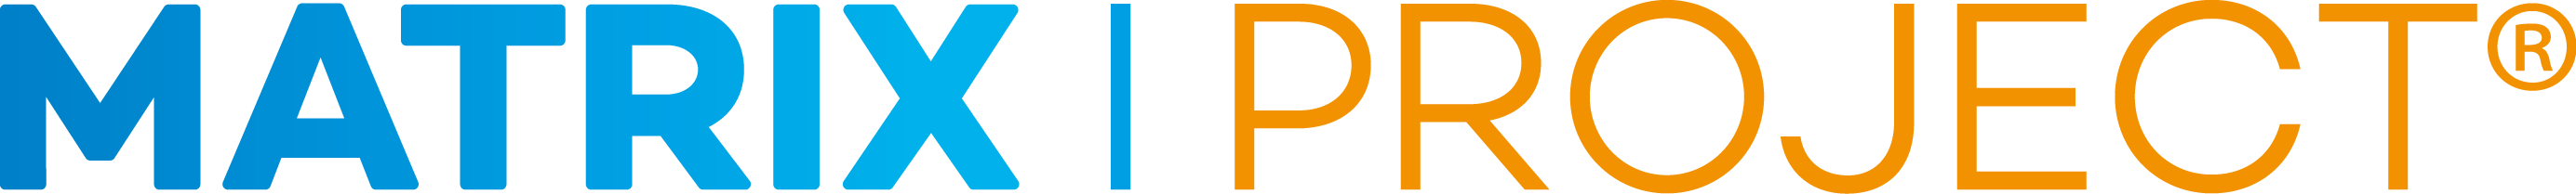 MatrixProject logo